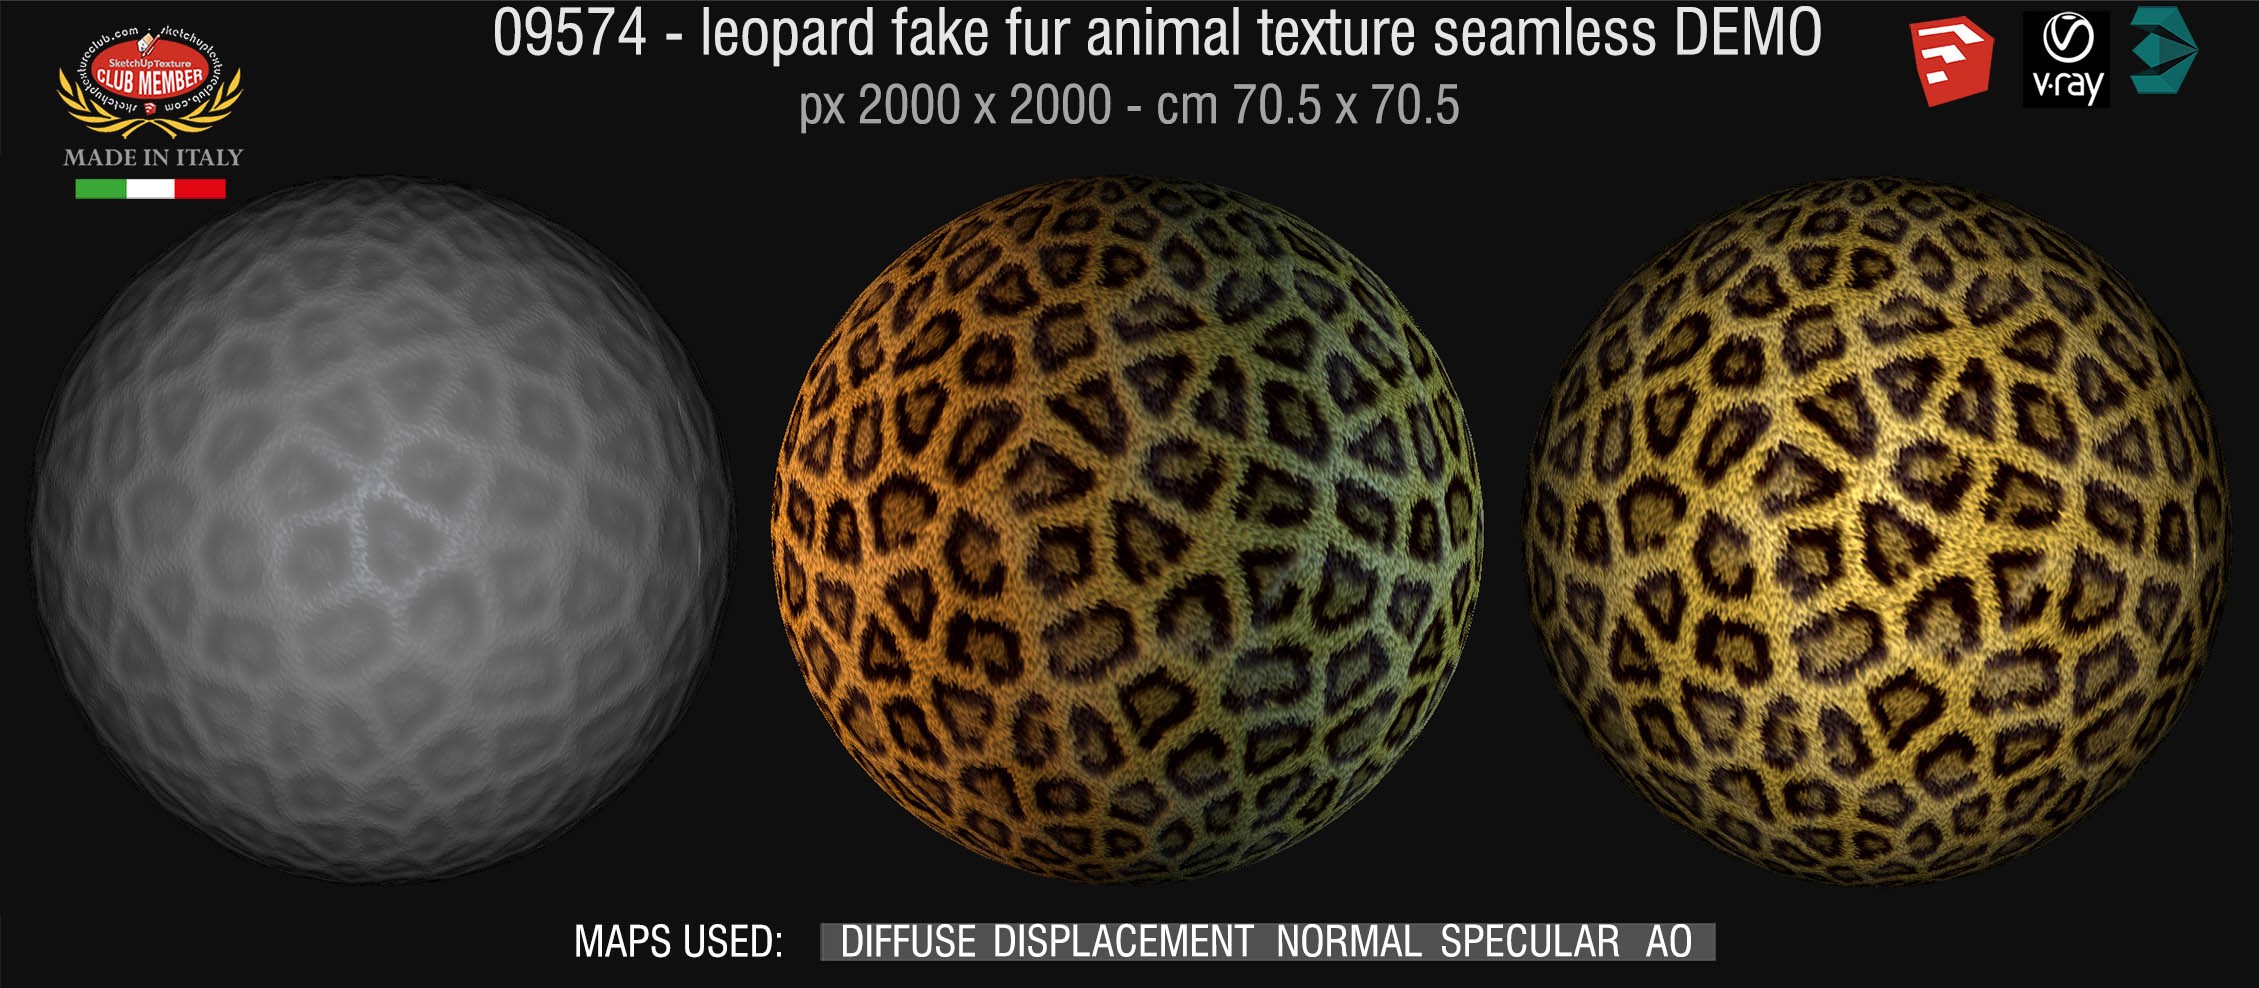 09574 HR Leopard fake fur animal texture + maps DEMO